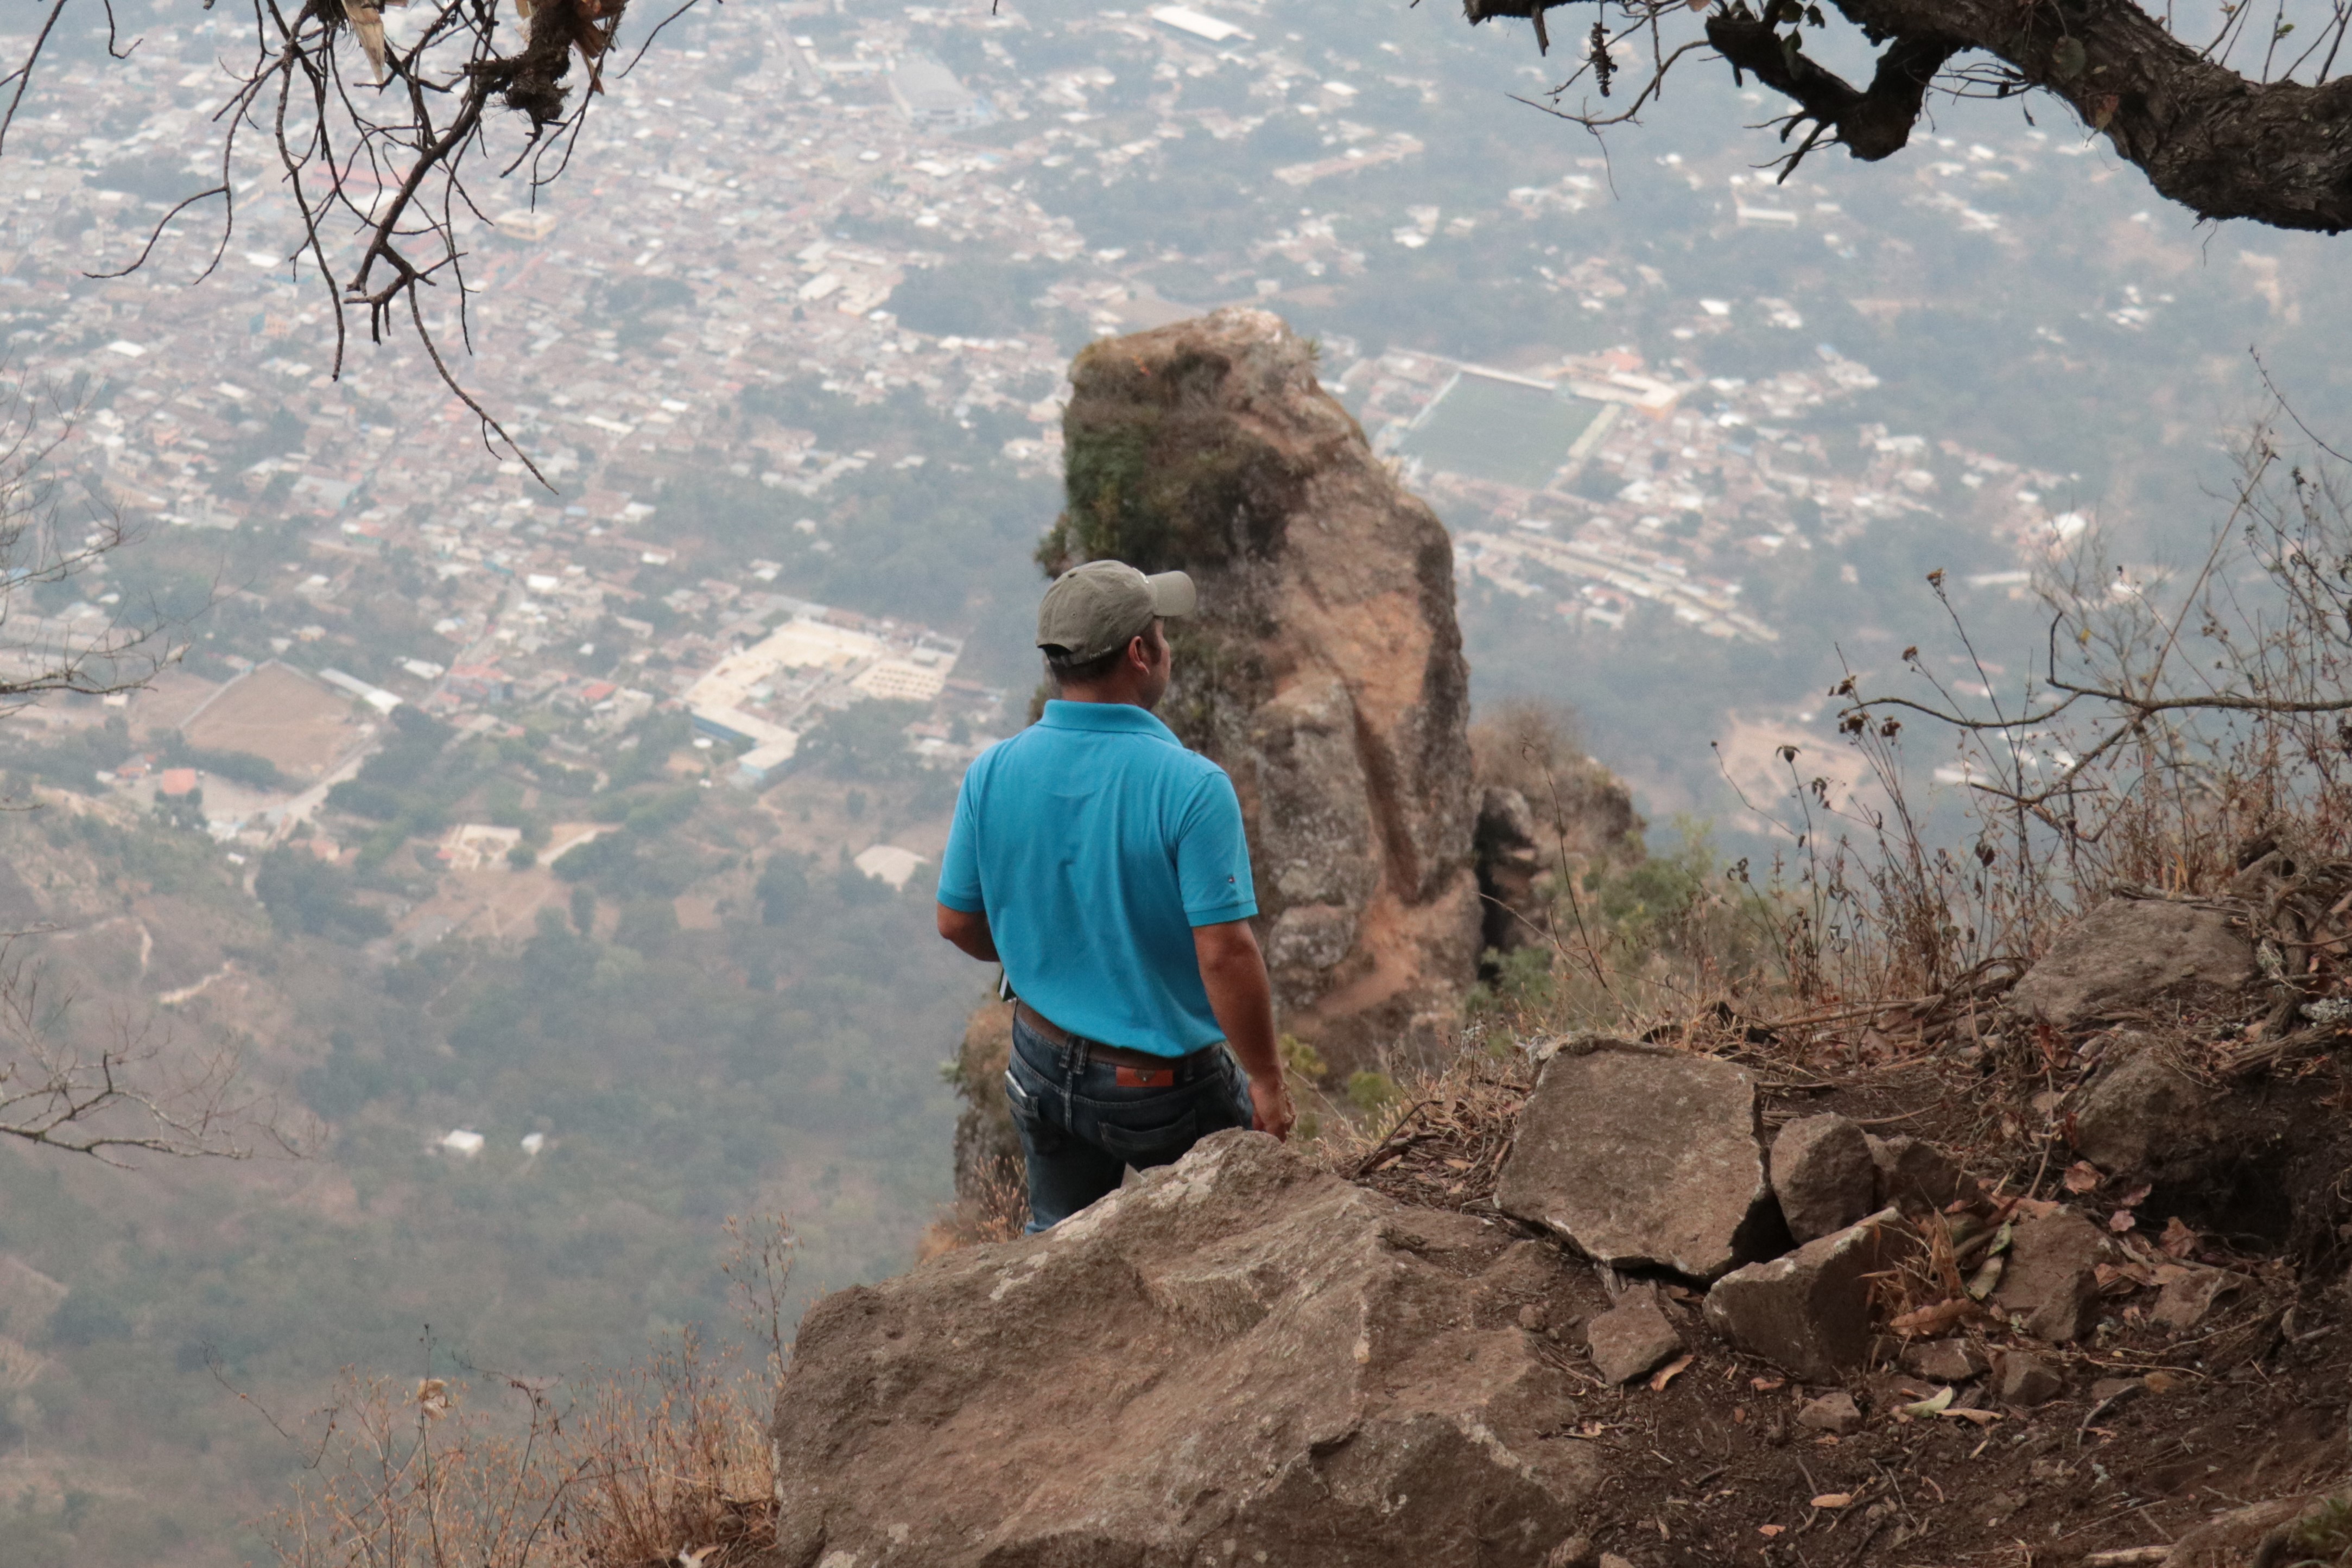 El camino hacía el cerro Nariz del Indio en la parte alta se vuelve rocoso y de acceso complicado. (Foto Prensa Libre: Raúl Juárez)